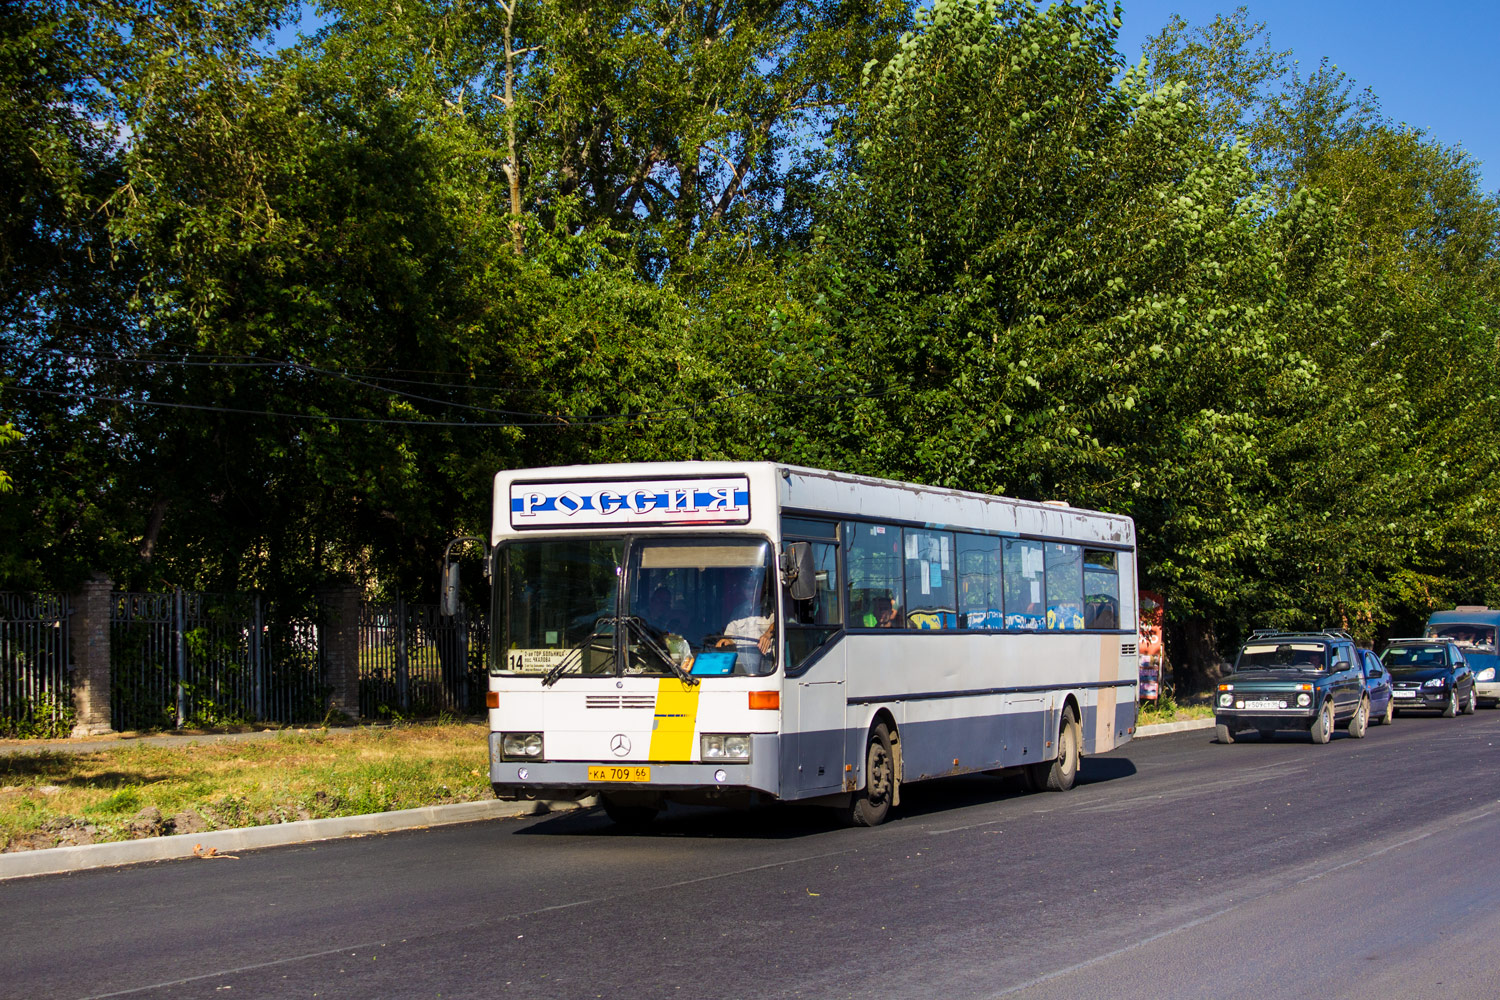 Kamensk-Ural'skiy, Mercedes-Benz O405 # КА 709 66